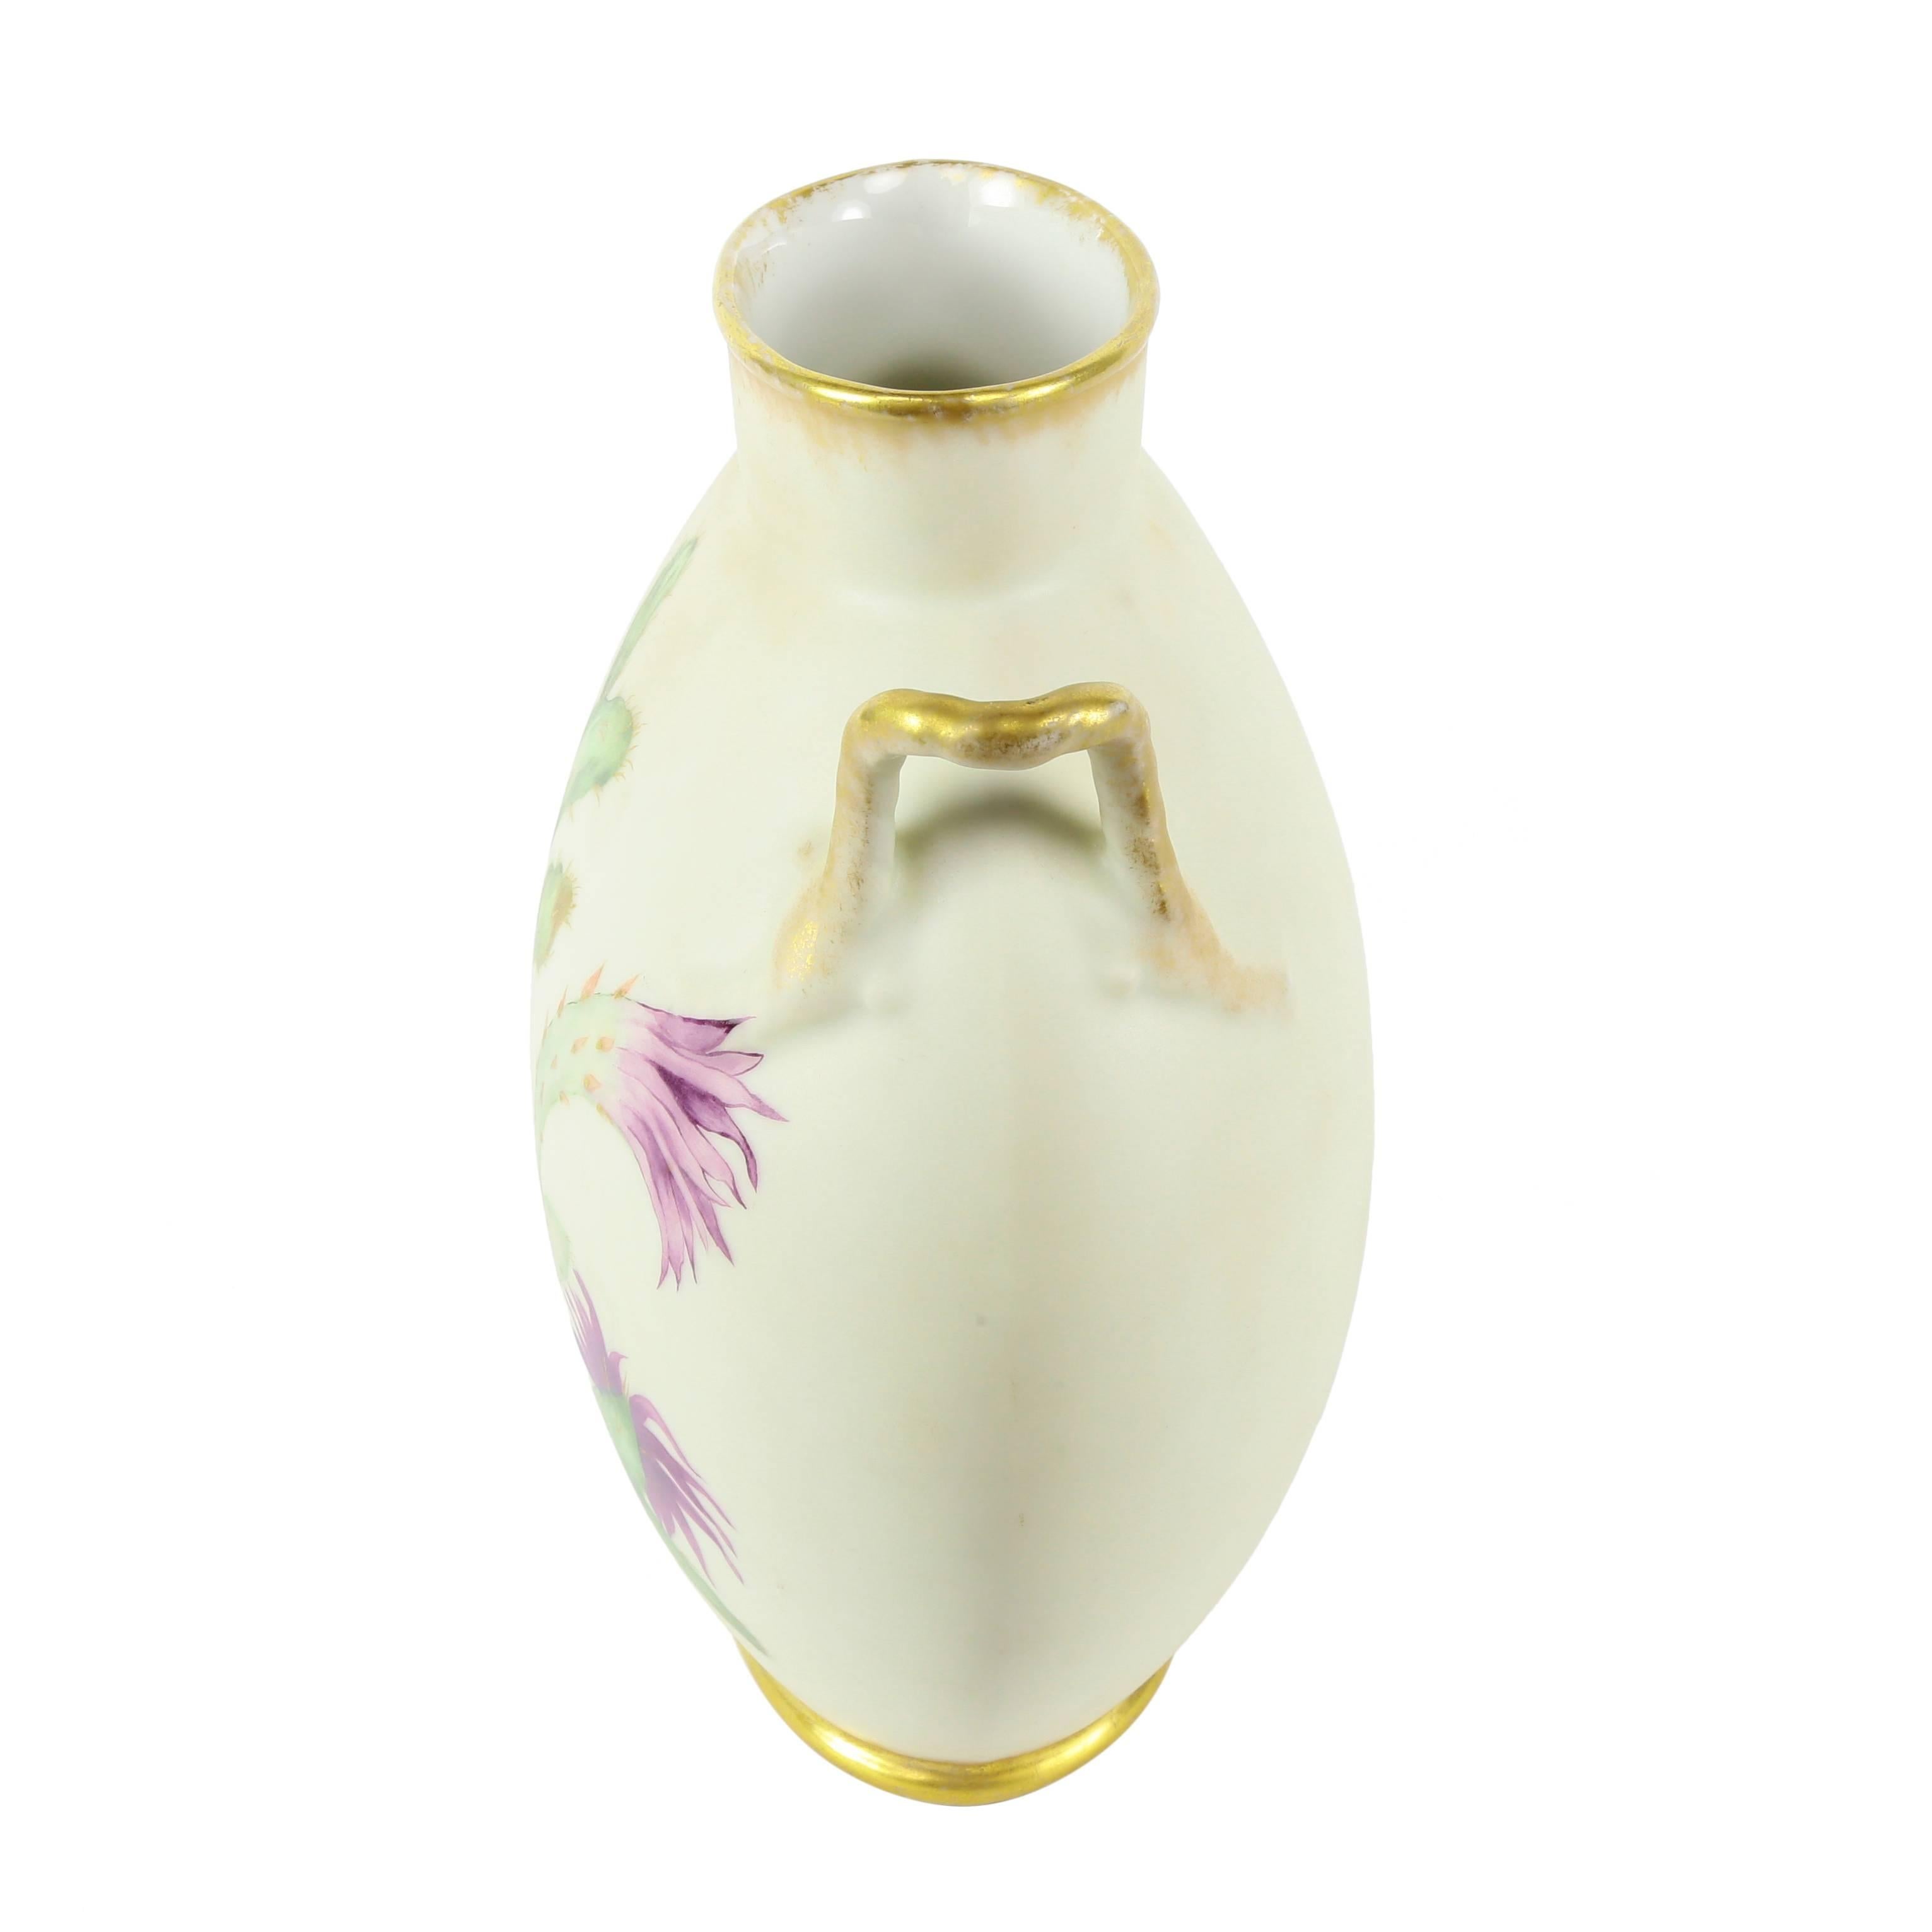 Vase coussin en porcelaine de Limoges : la réponse parfaite à la décoration d'un espace étroit, tel qu'une cheminée. Décoration florale et de cactus peinte à la main. Les anses ajoutent à la beauté et à l'équilibre du vase, vers 1890. Ajoutez une